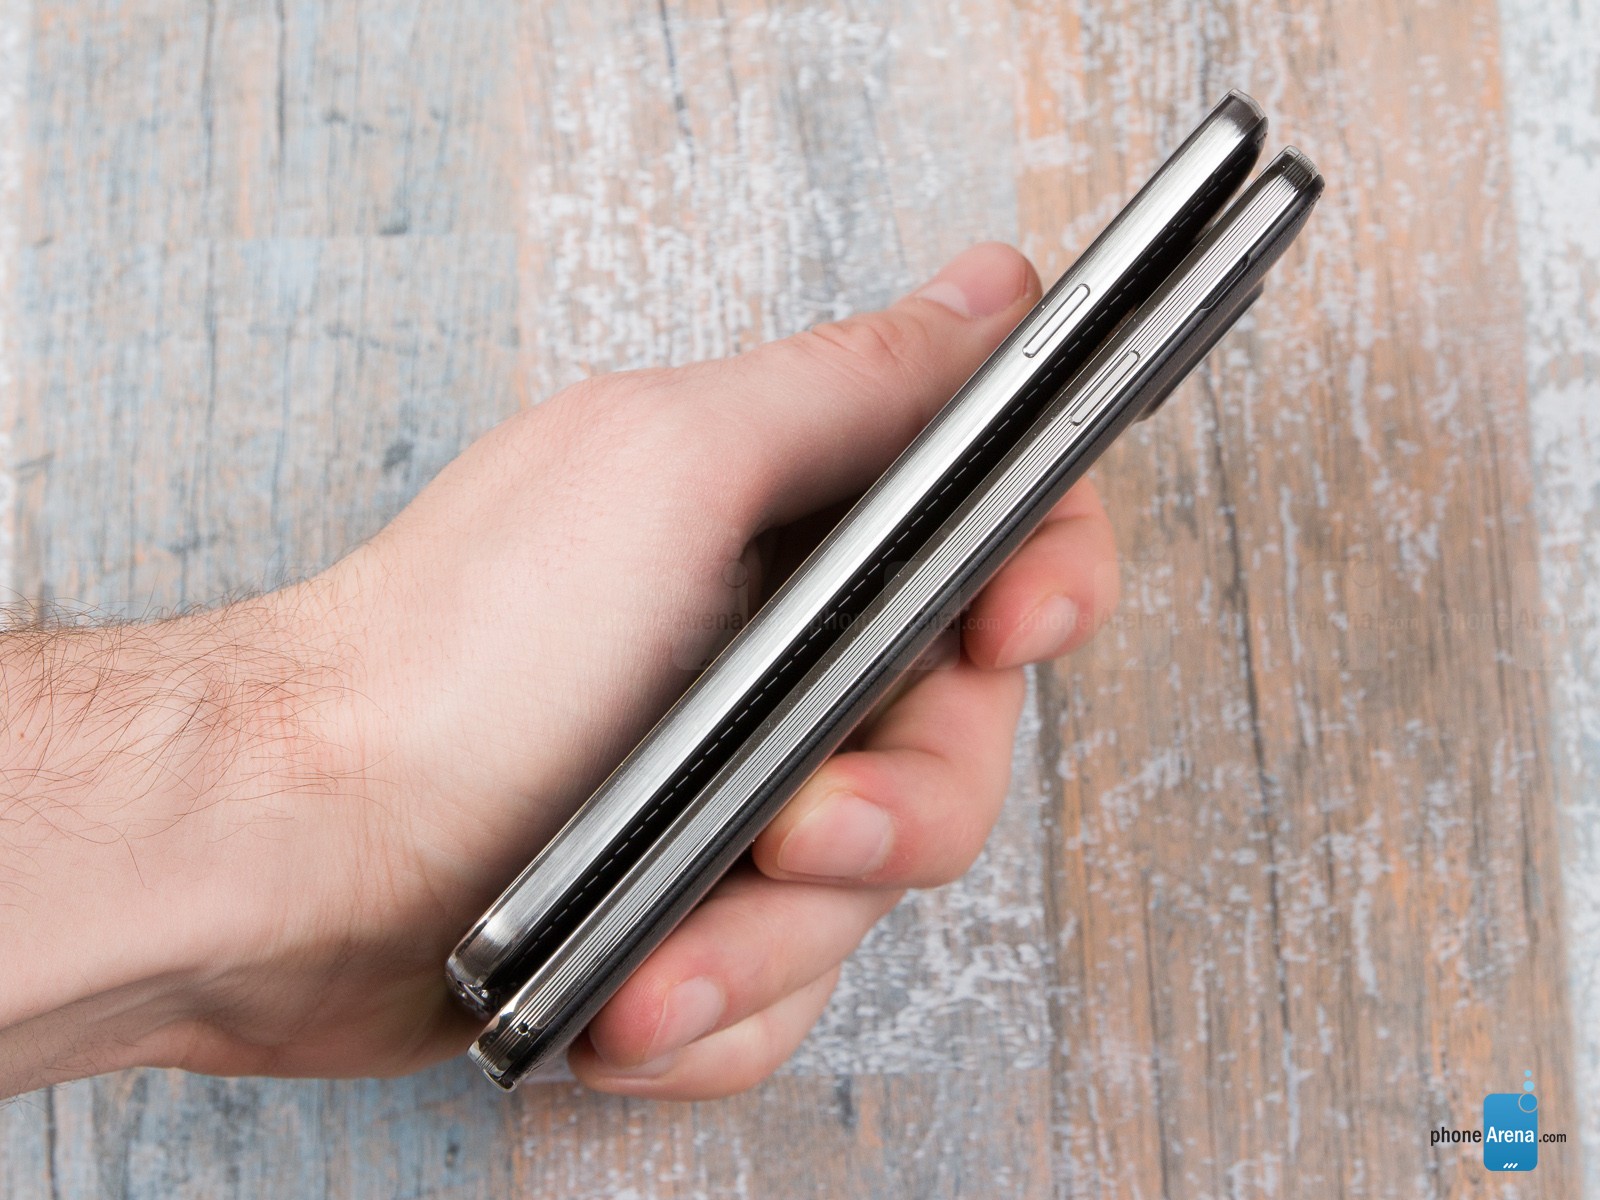 Sườn máy của Galaxy Note 3 Neo cũng có một chút khác biệt khi không có những rãnh nhỏ song song với thân máy. Có lẽ Samsung muốn đơn giản hóa công đoạn gia công thiết kế của chiếc điện thoại này.